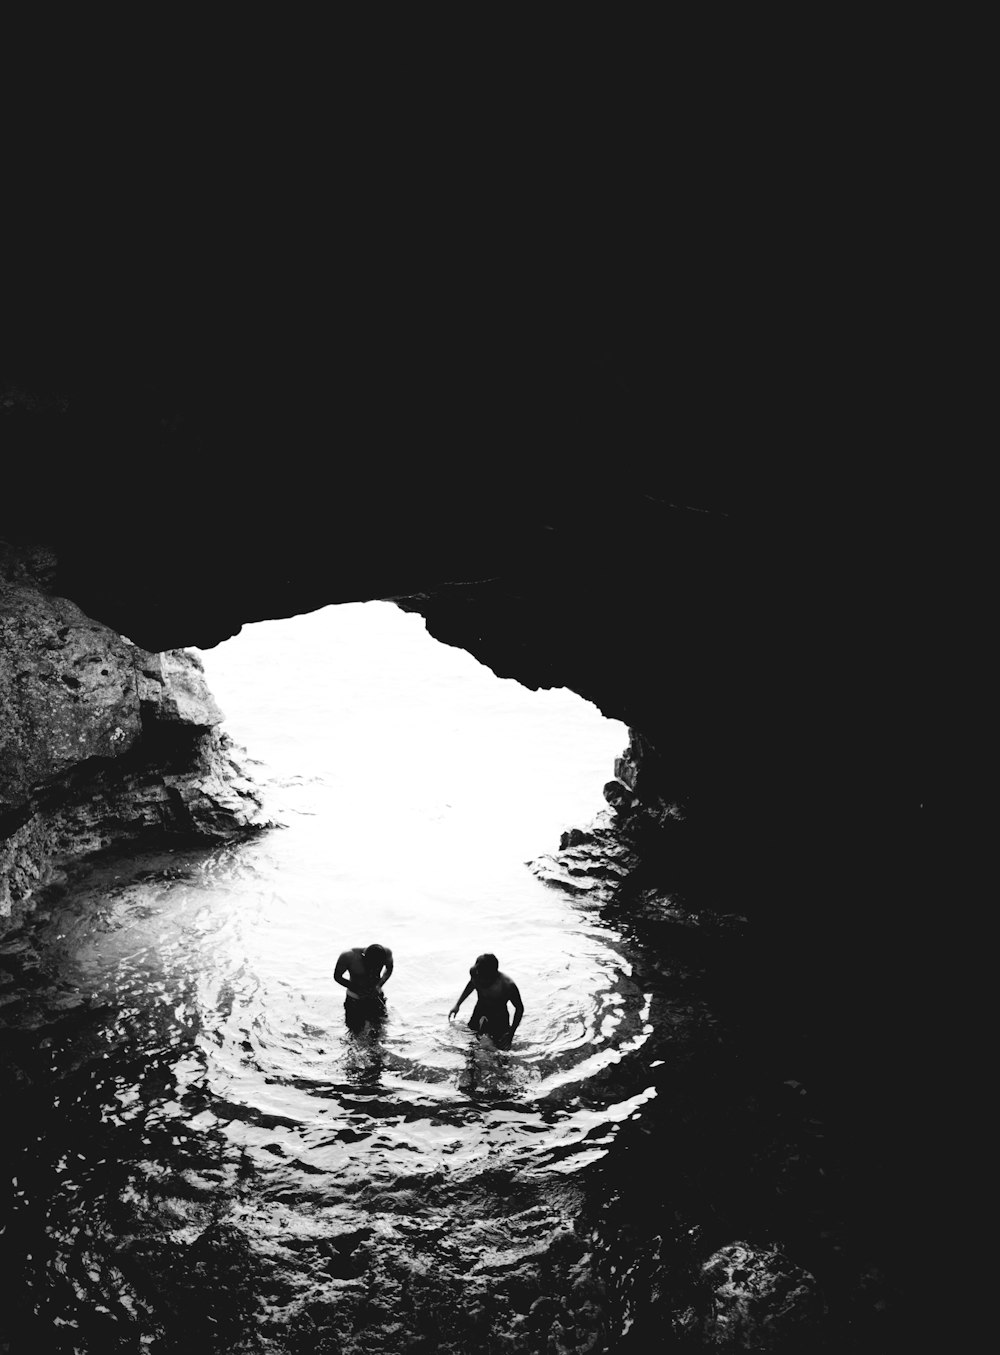 물줄기가 있는 동굴에 있는 두 남자의 회색조 사진